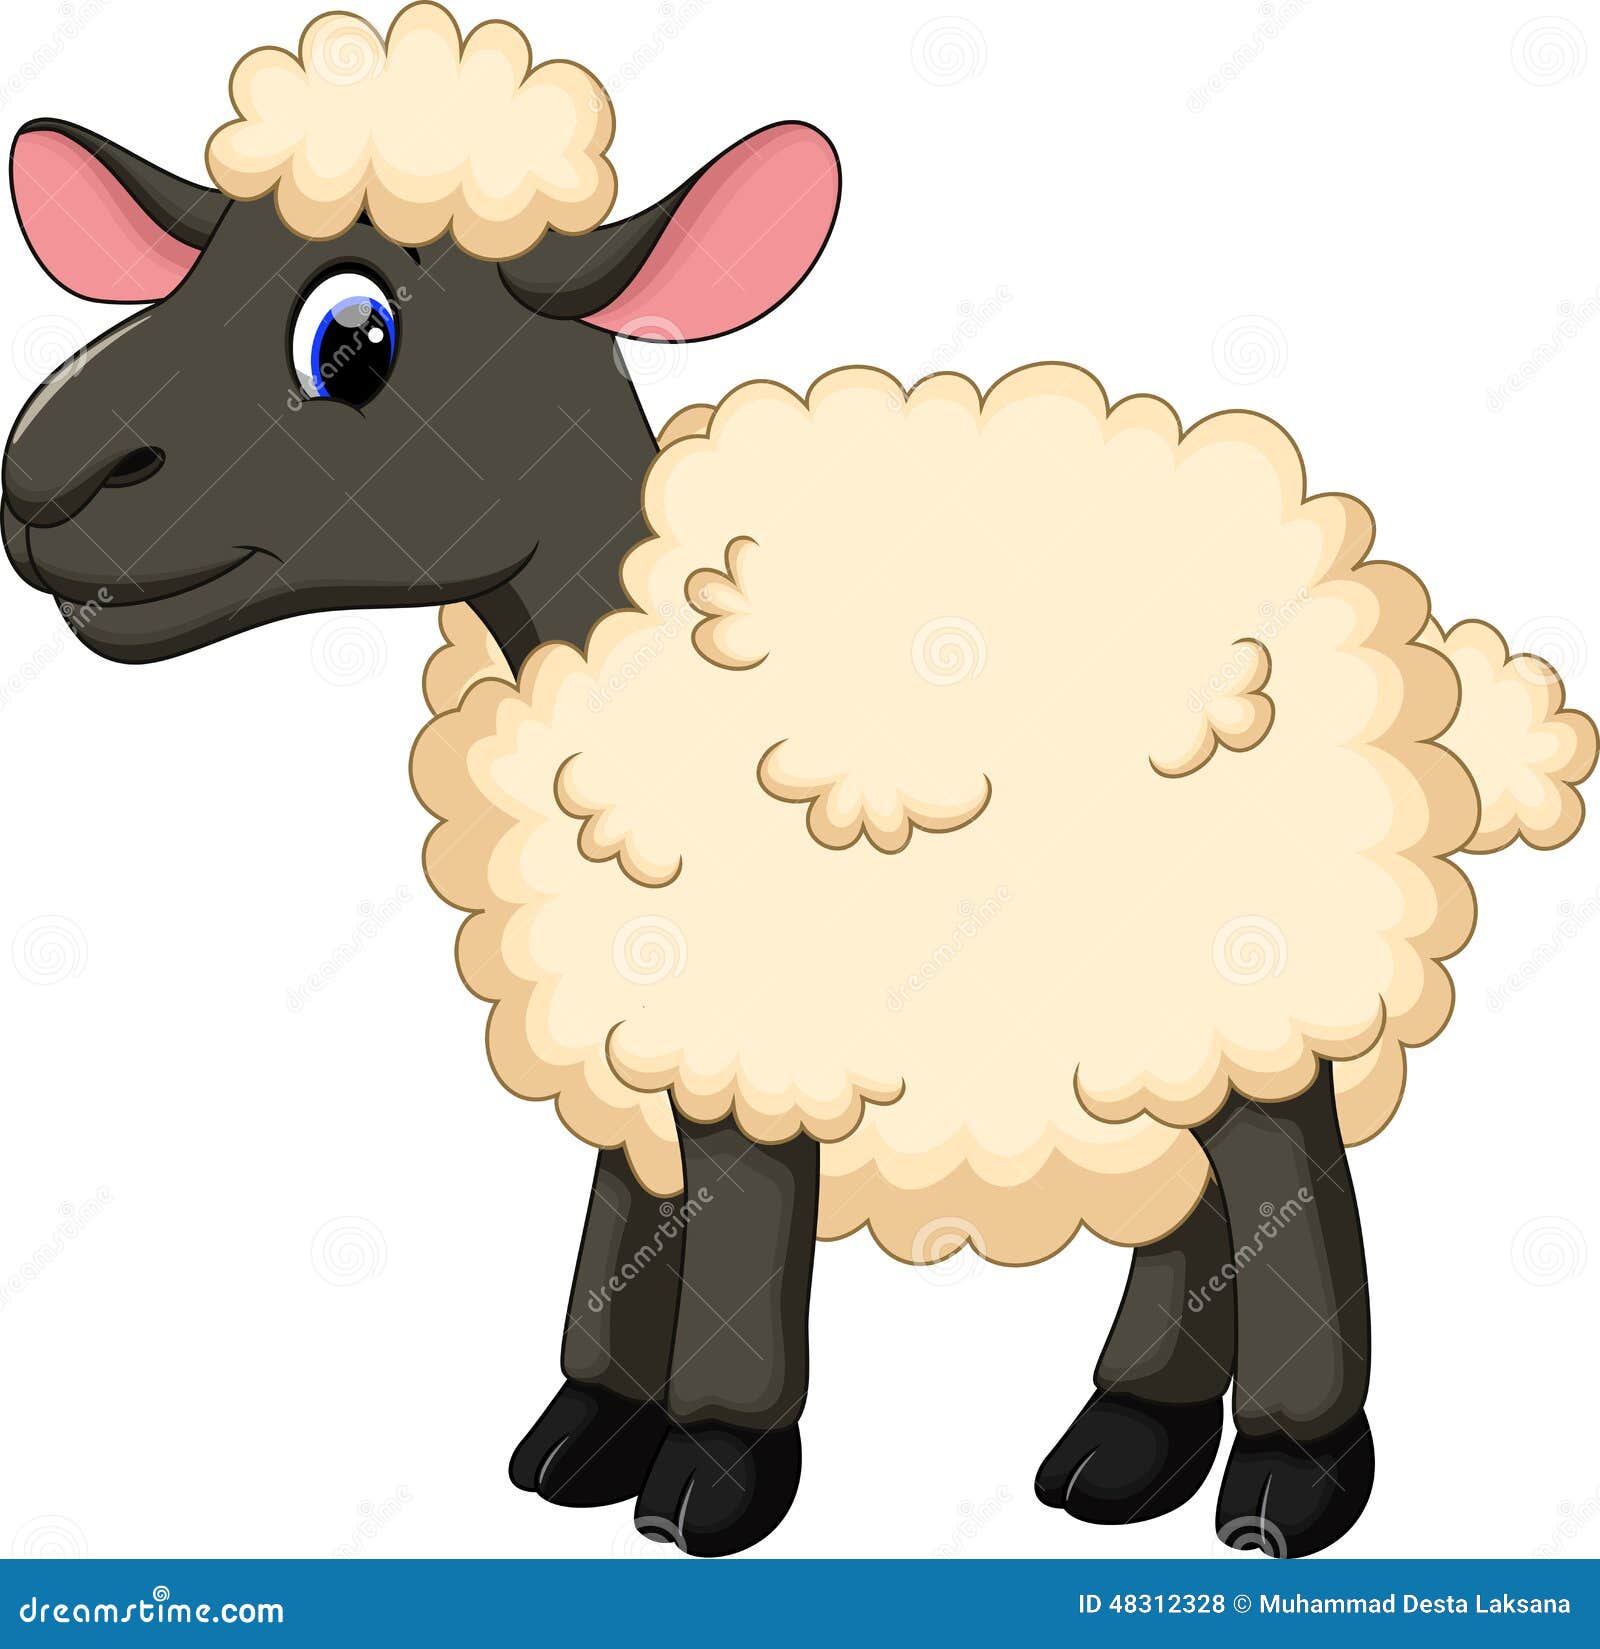 Cute sheep cartoon stock illustration. Illustration of livestock - 48312328